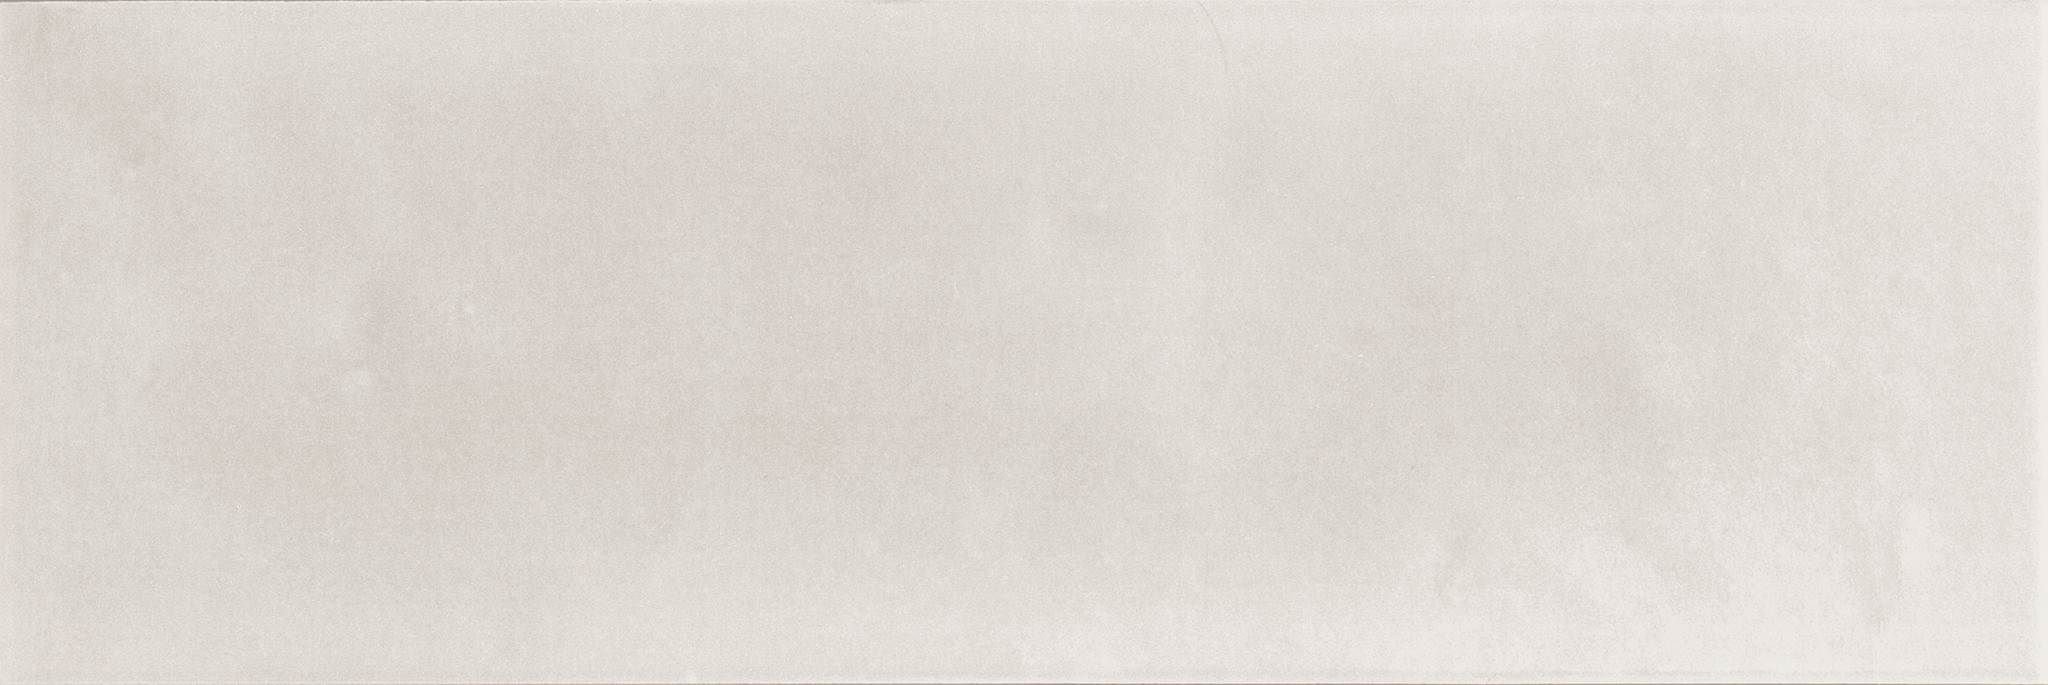 Керамическая плитка Absolut Keramika Blanco Milano Brillo, цвет белый, поверхность глянцевая, прямоугольник, 100x300